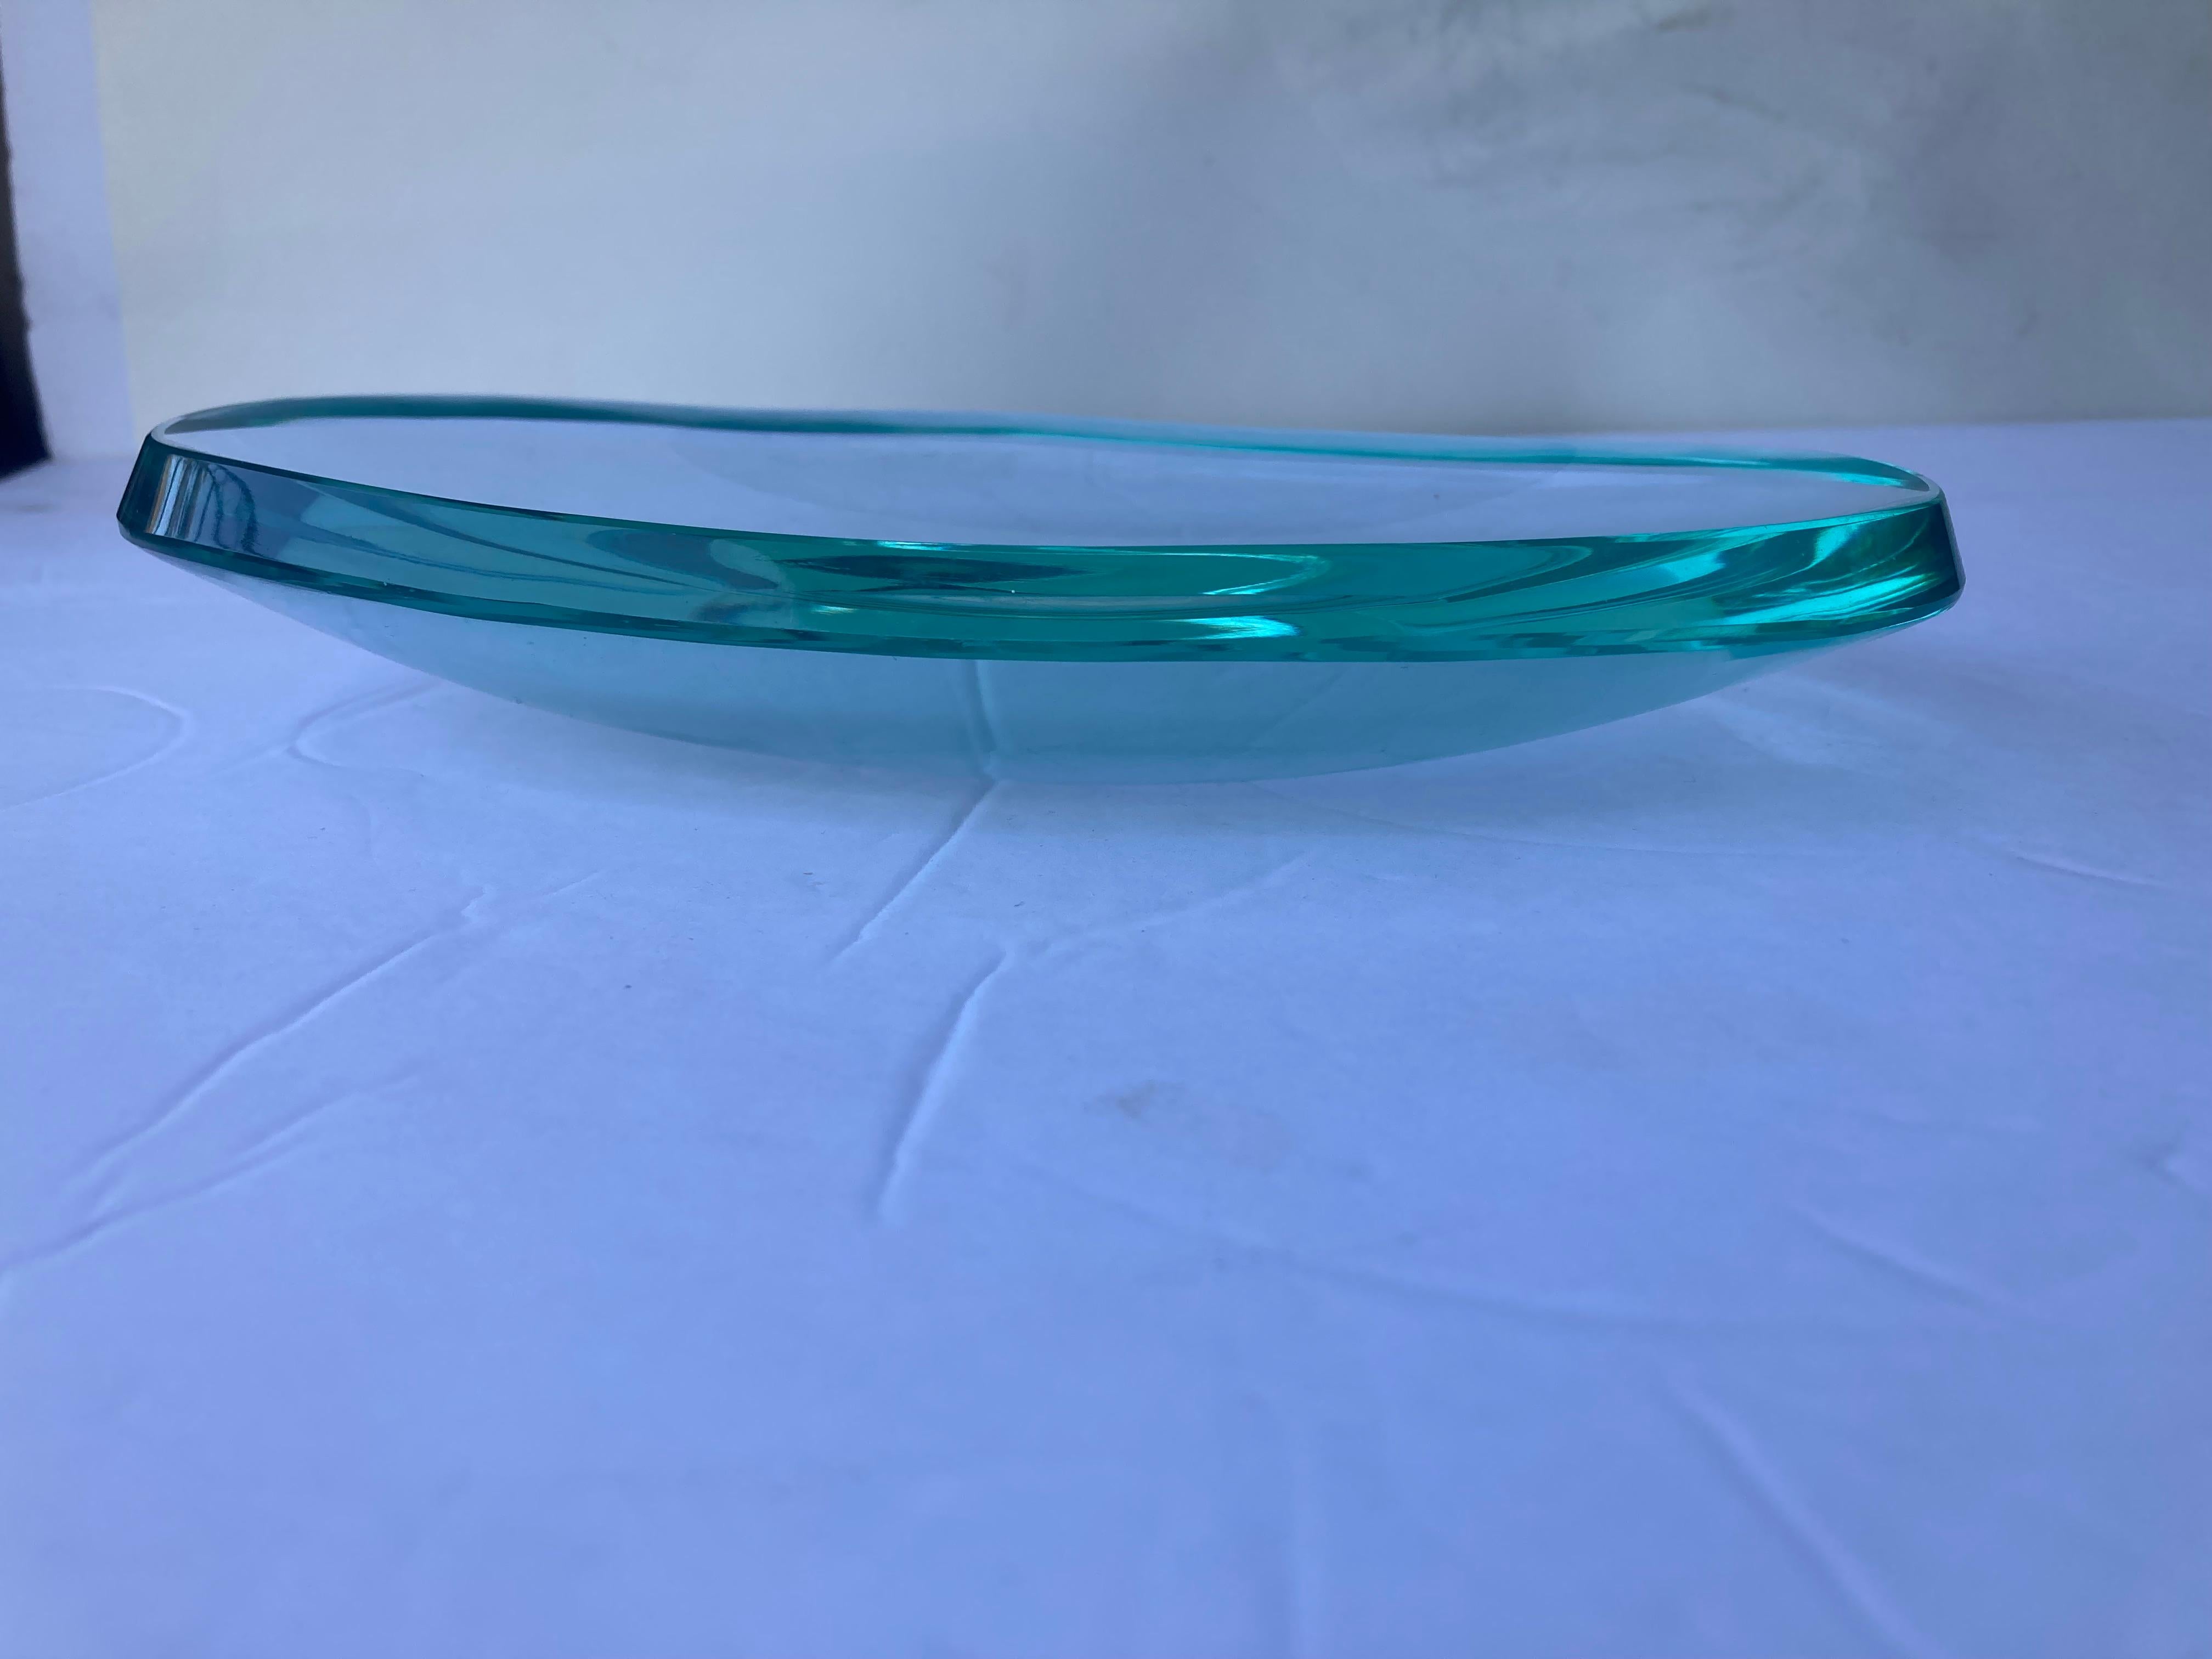 Beau plat/Vide de forme libre - Poche par Fontana Arte, avec la marque FX dans le fond, montre de légères éraflures près de la signature. Étonnant verre de couleur vert/bleu, très traditionnel pour le travail du verre en Italie.